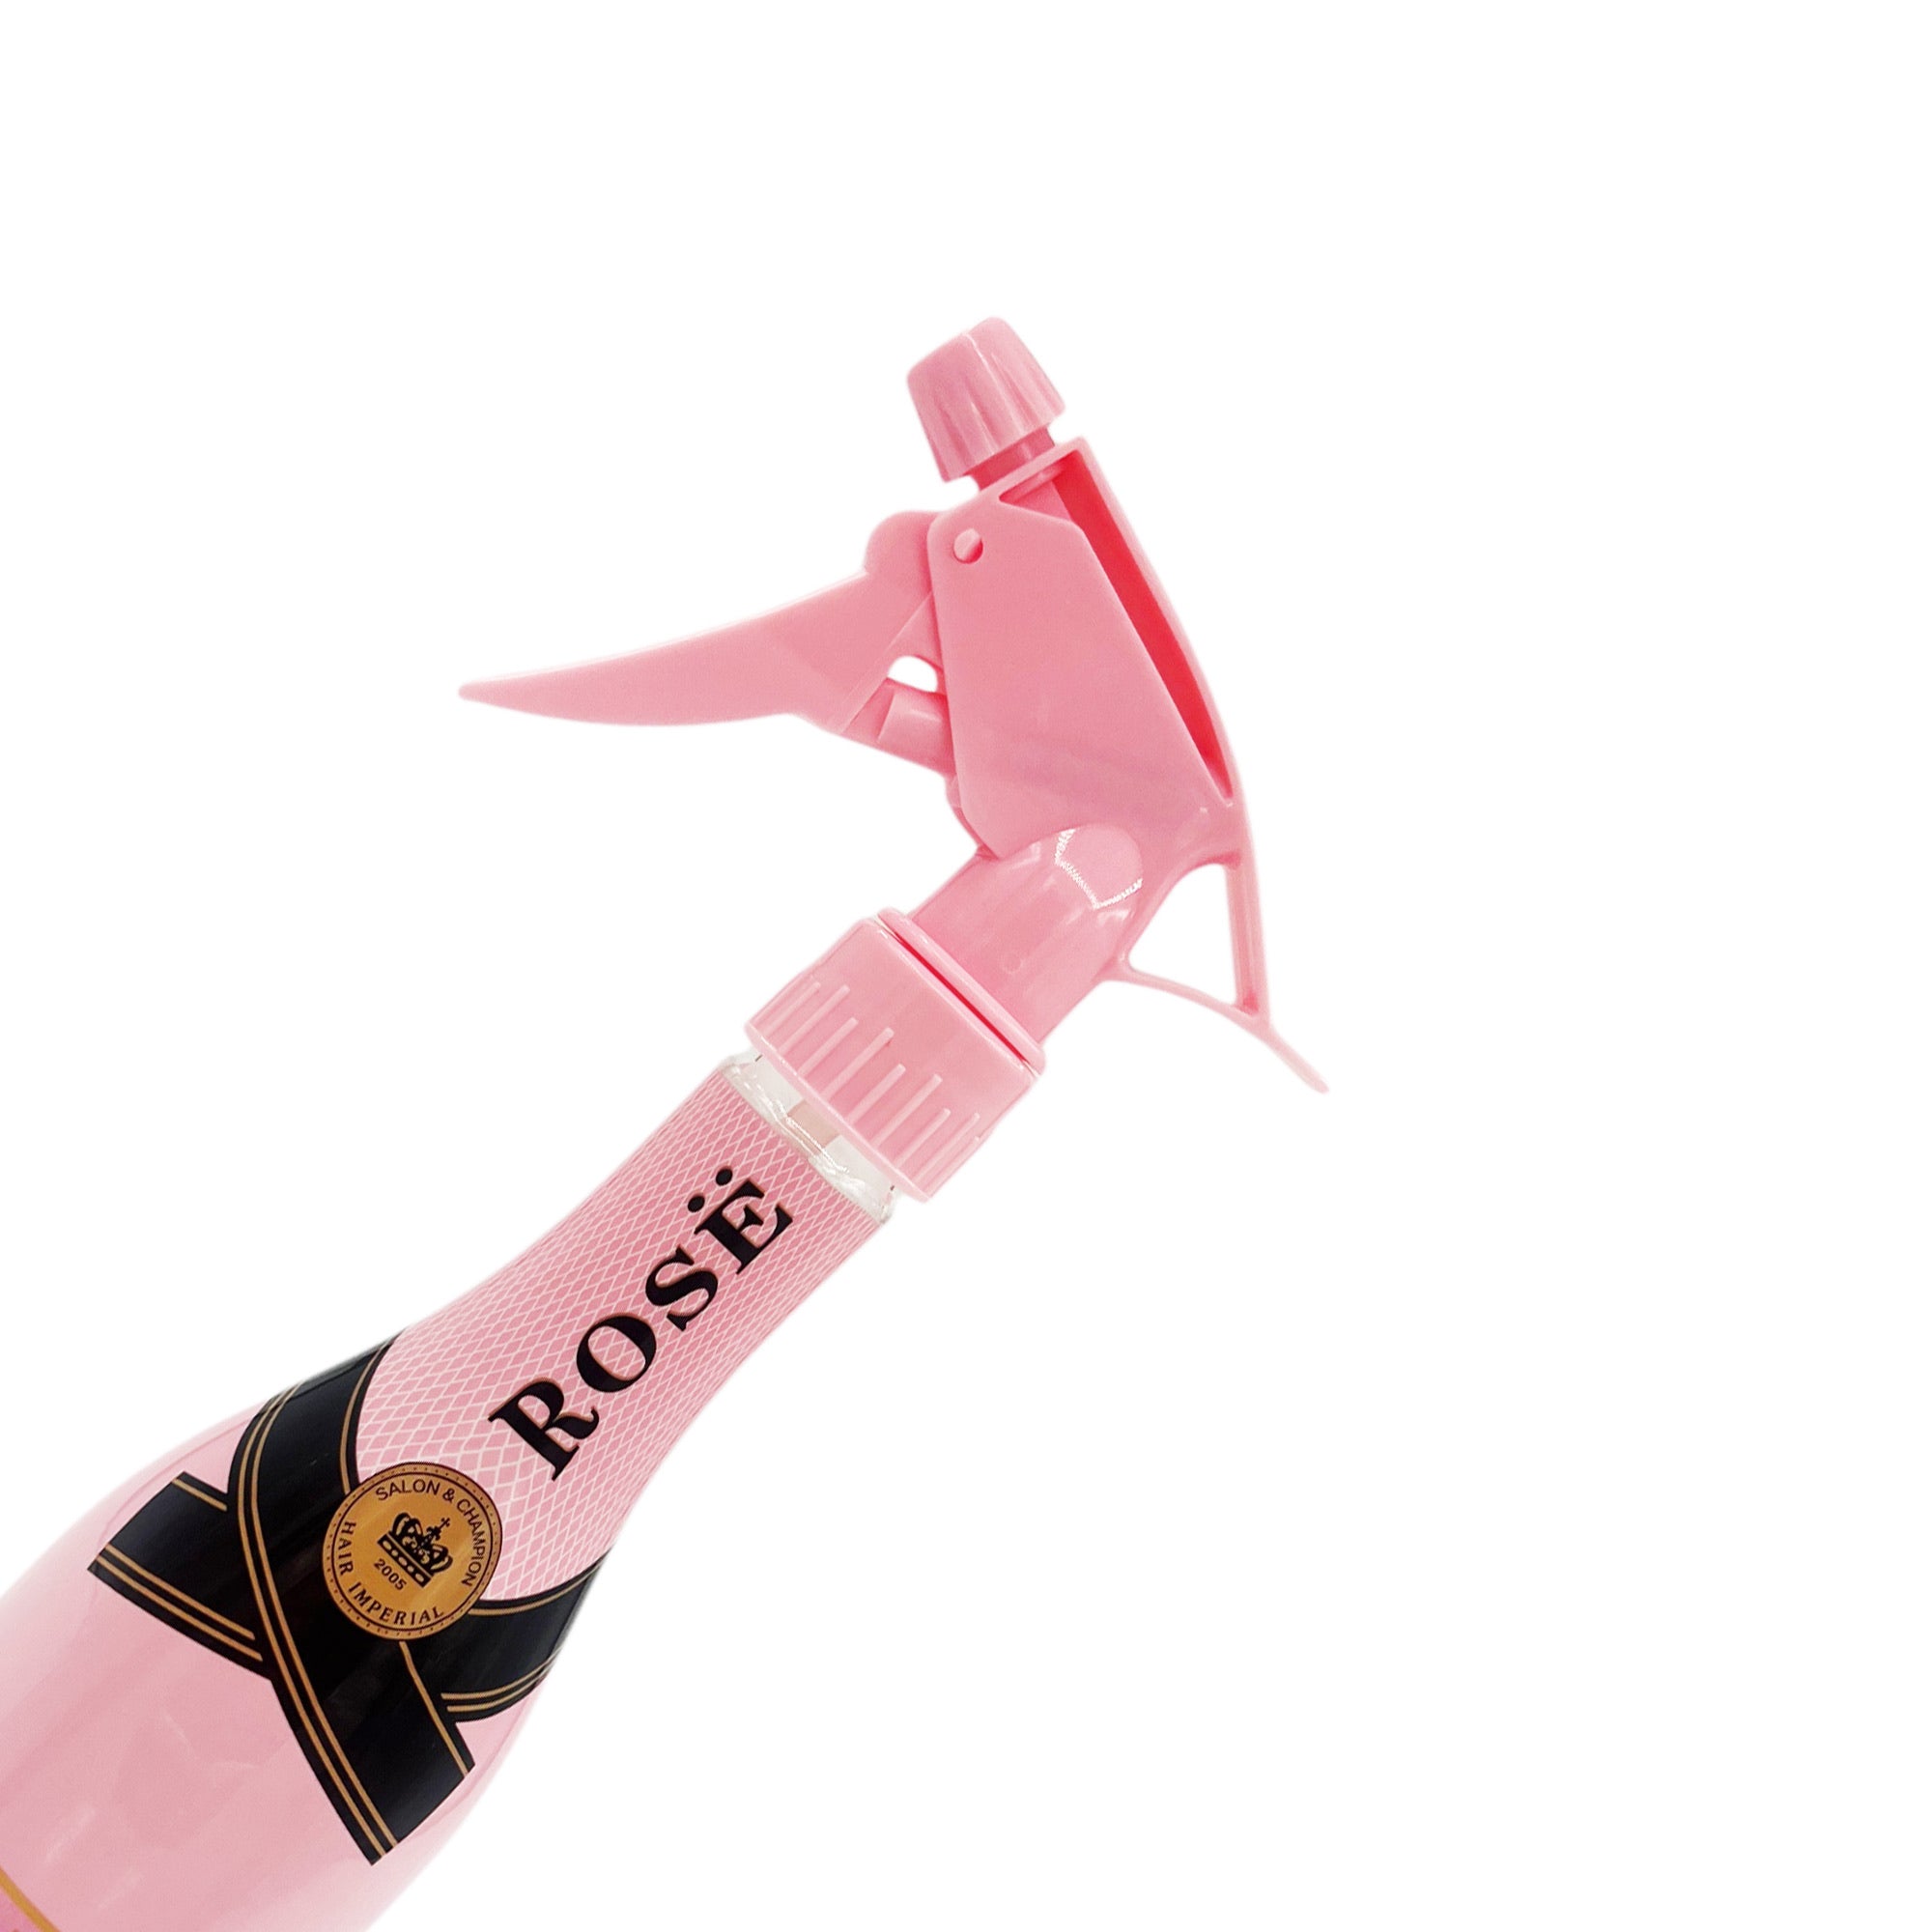 Eson - Water Spray Bottle 280ml Extreme Mist Sprayer Champagne Style (Pink)